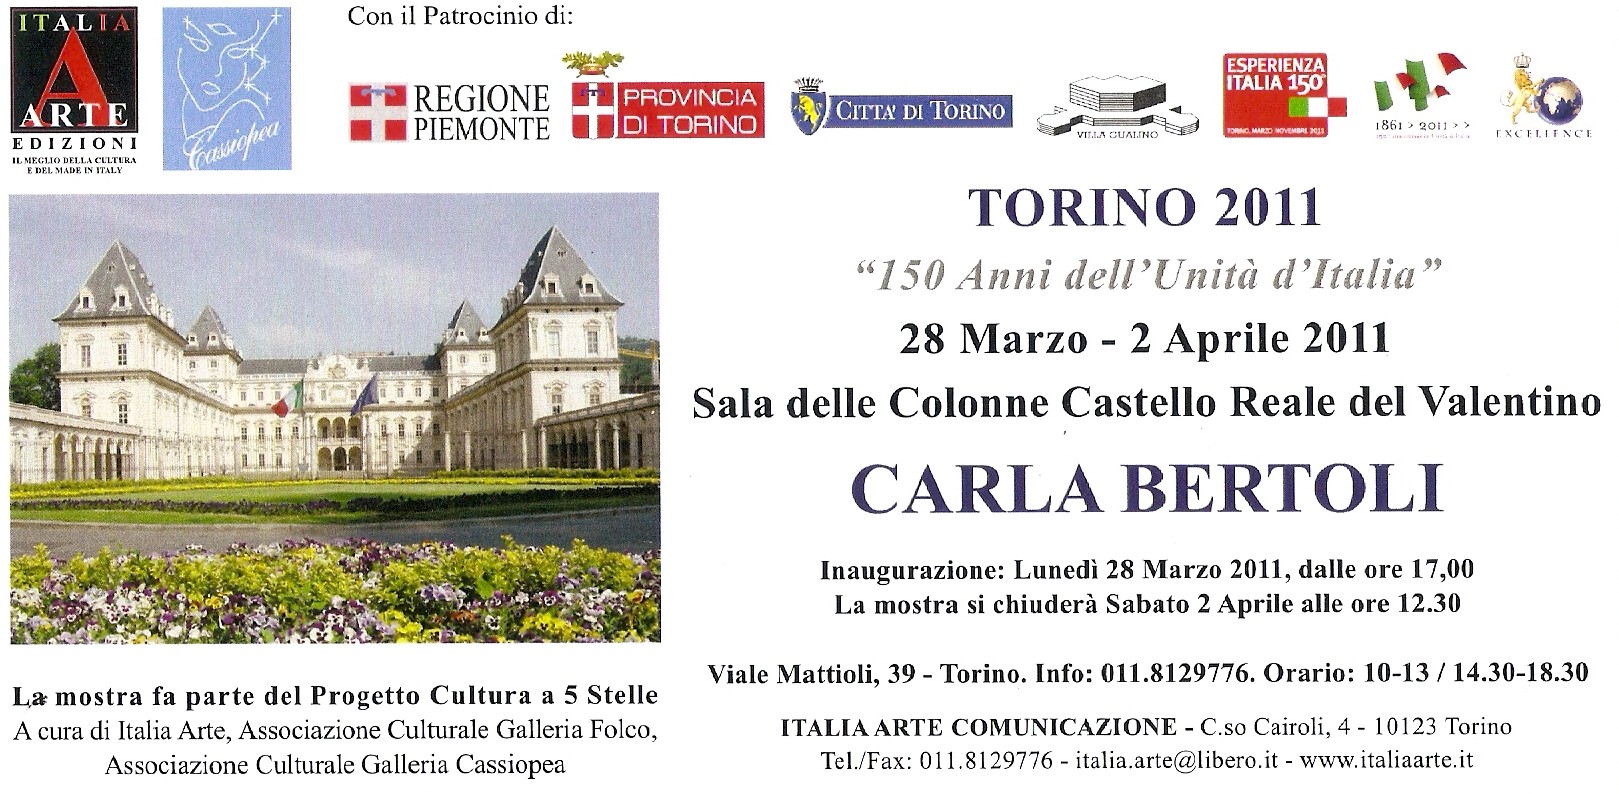 Sala delle Colonne - Castello Reale del Valentino - Torino 2011